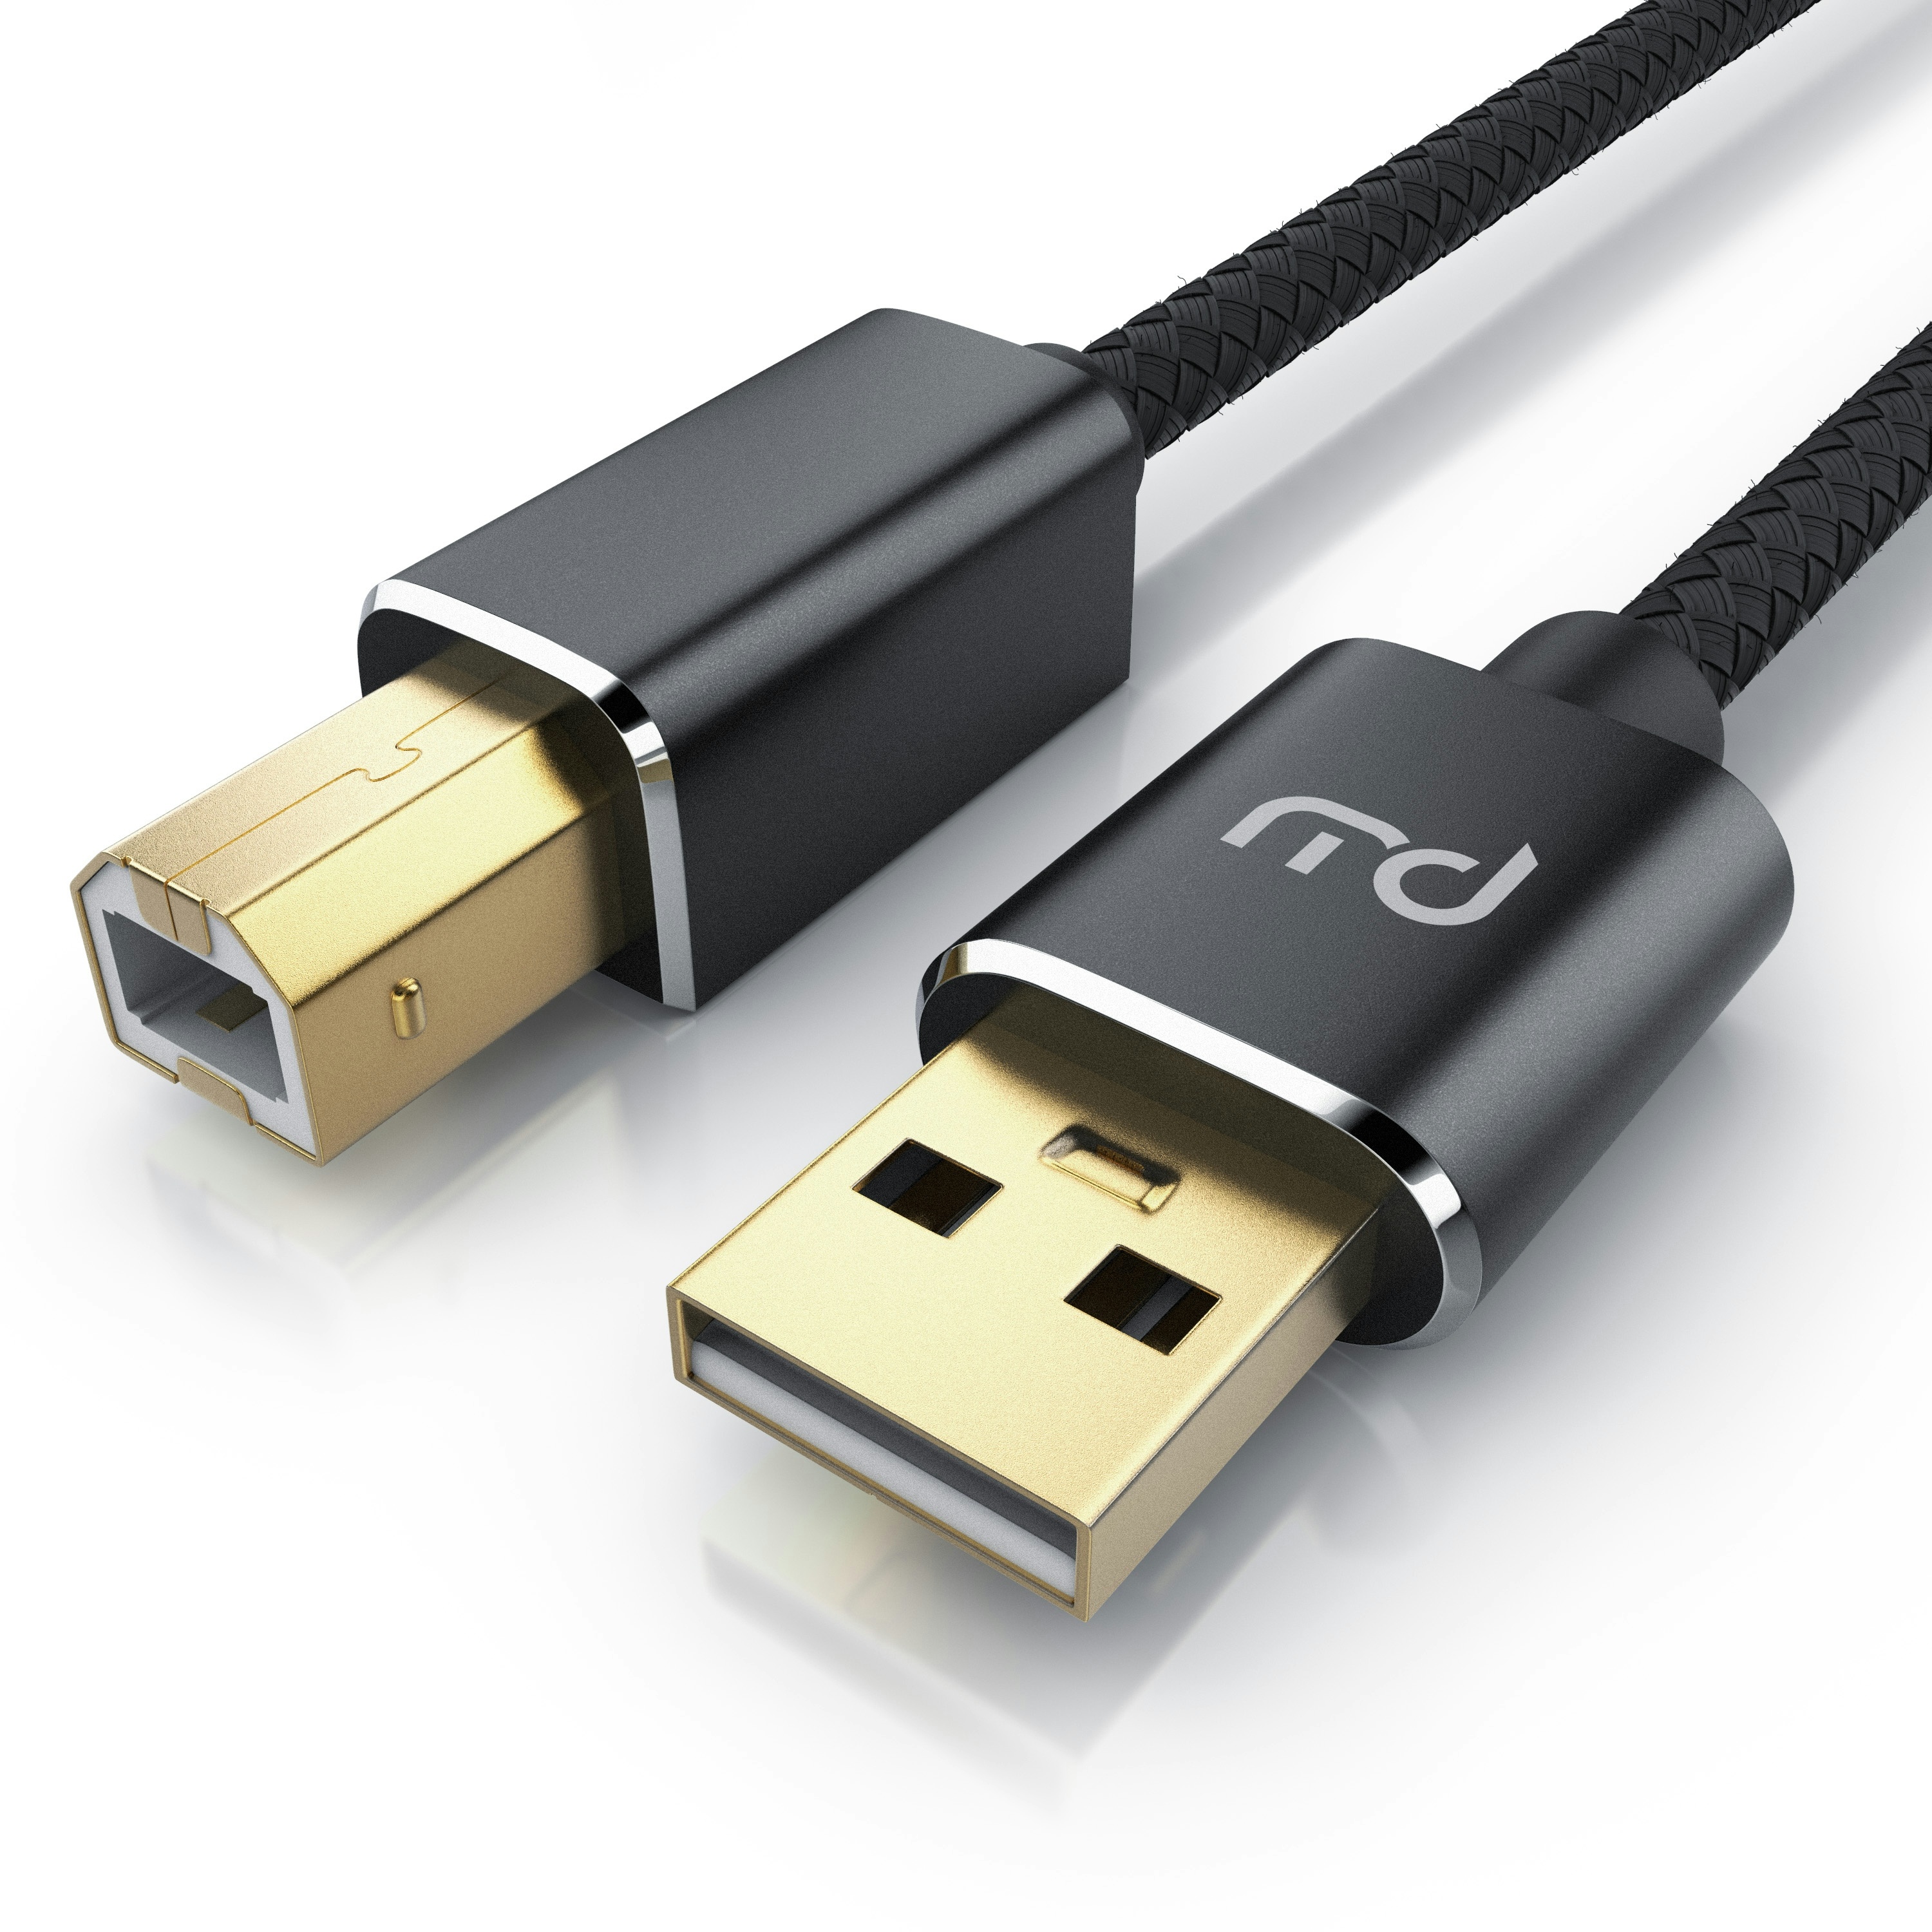 Primewire USB 2.0 Drucker / Scanner Kabel mit Nylonmantel - 2m